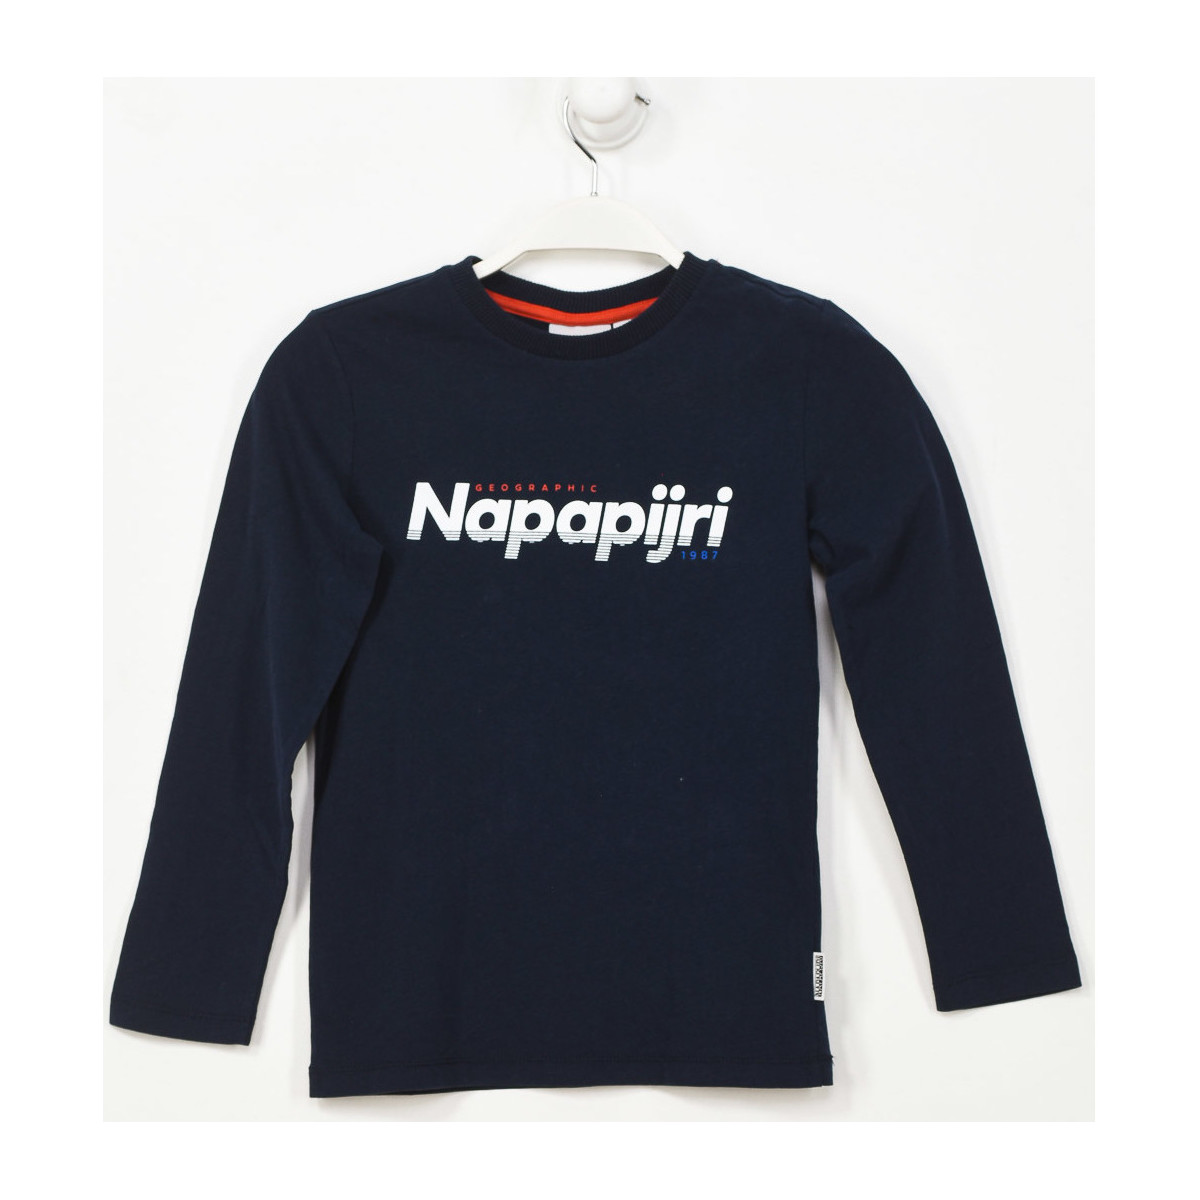 textil Pojkar T-shirts Napapijri GA4EQF-176 Blå